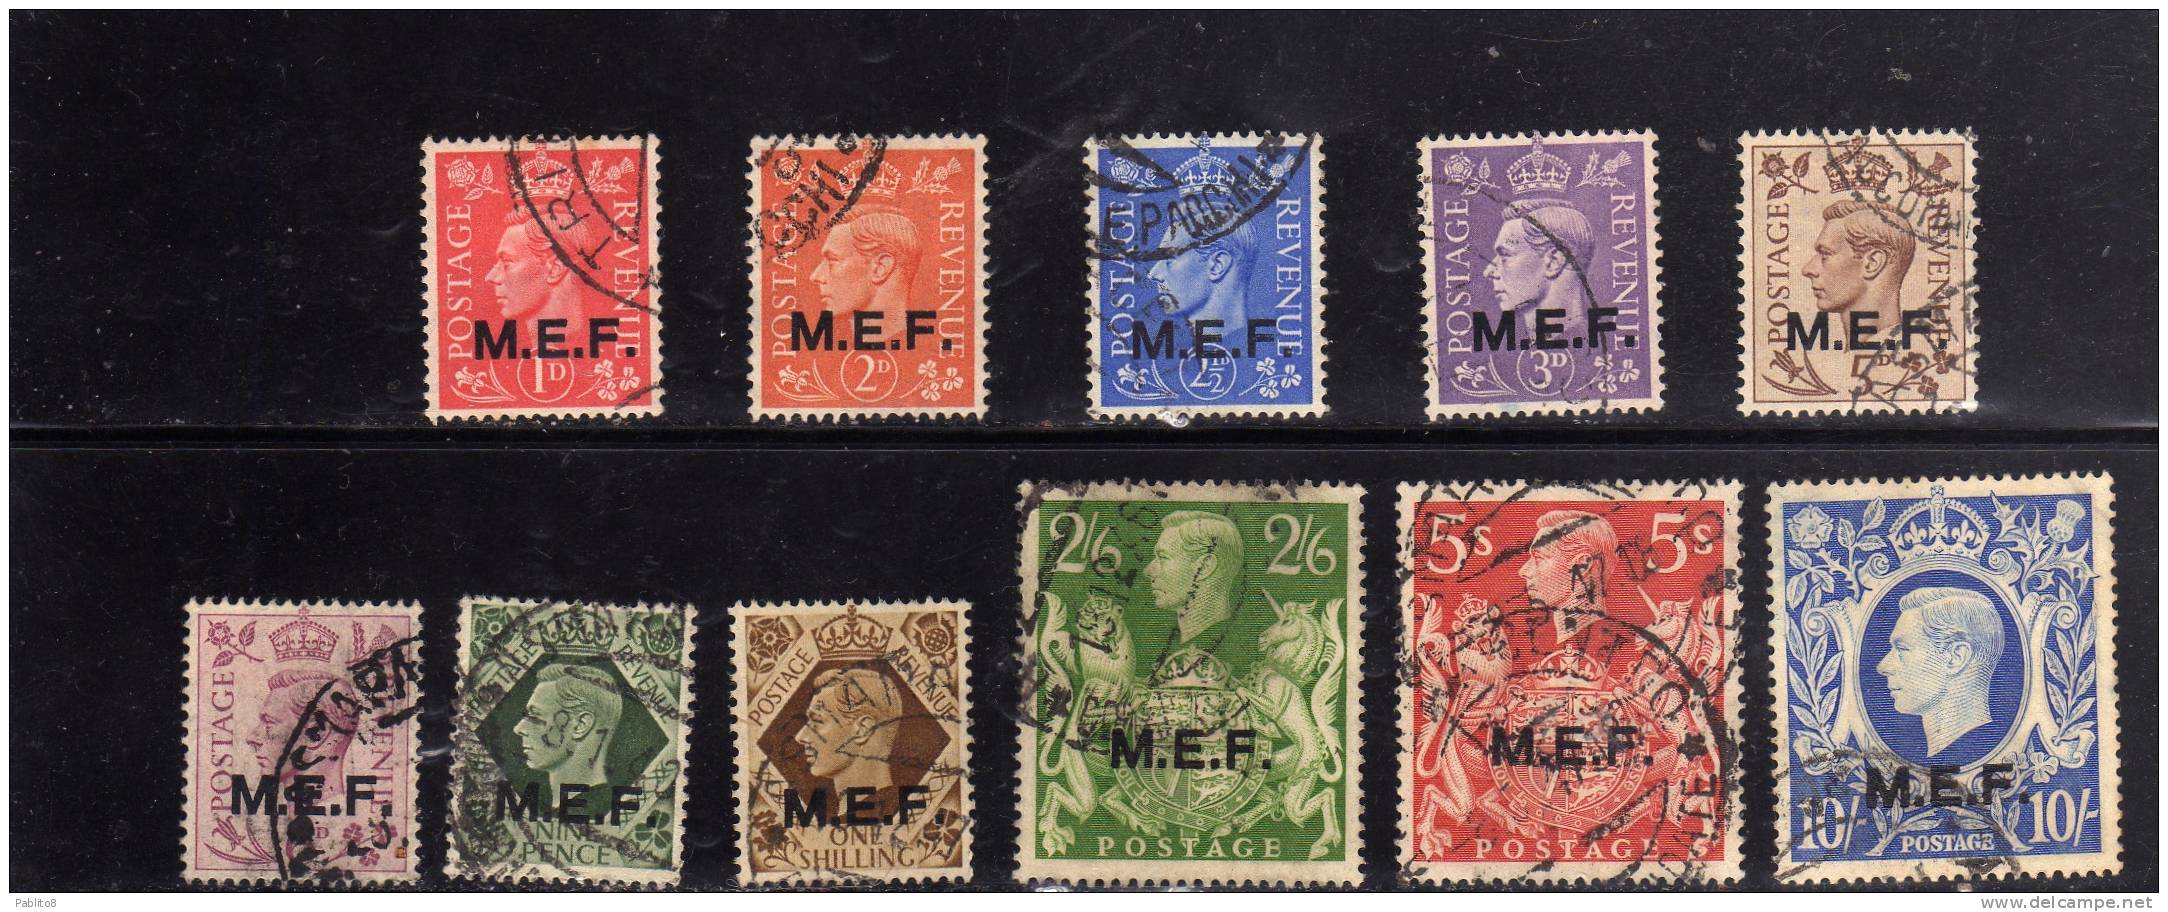 MEF M.E.F. 1943 - 1947 SERIE COMPLETA COMPLETE SET USATA USED OBLITERE' - Occ. Britanique MEF